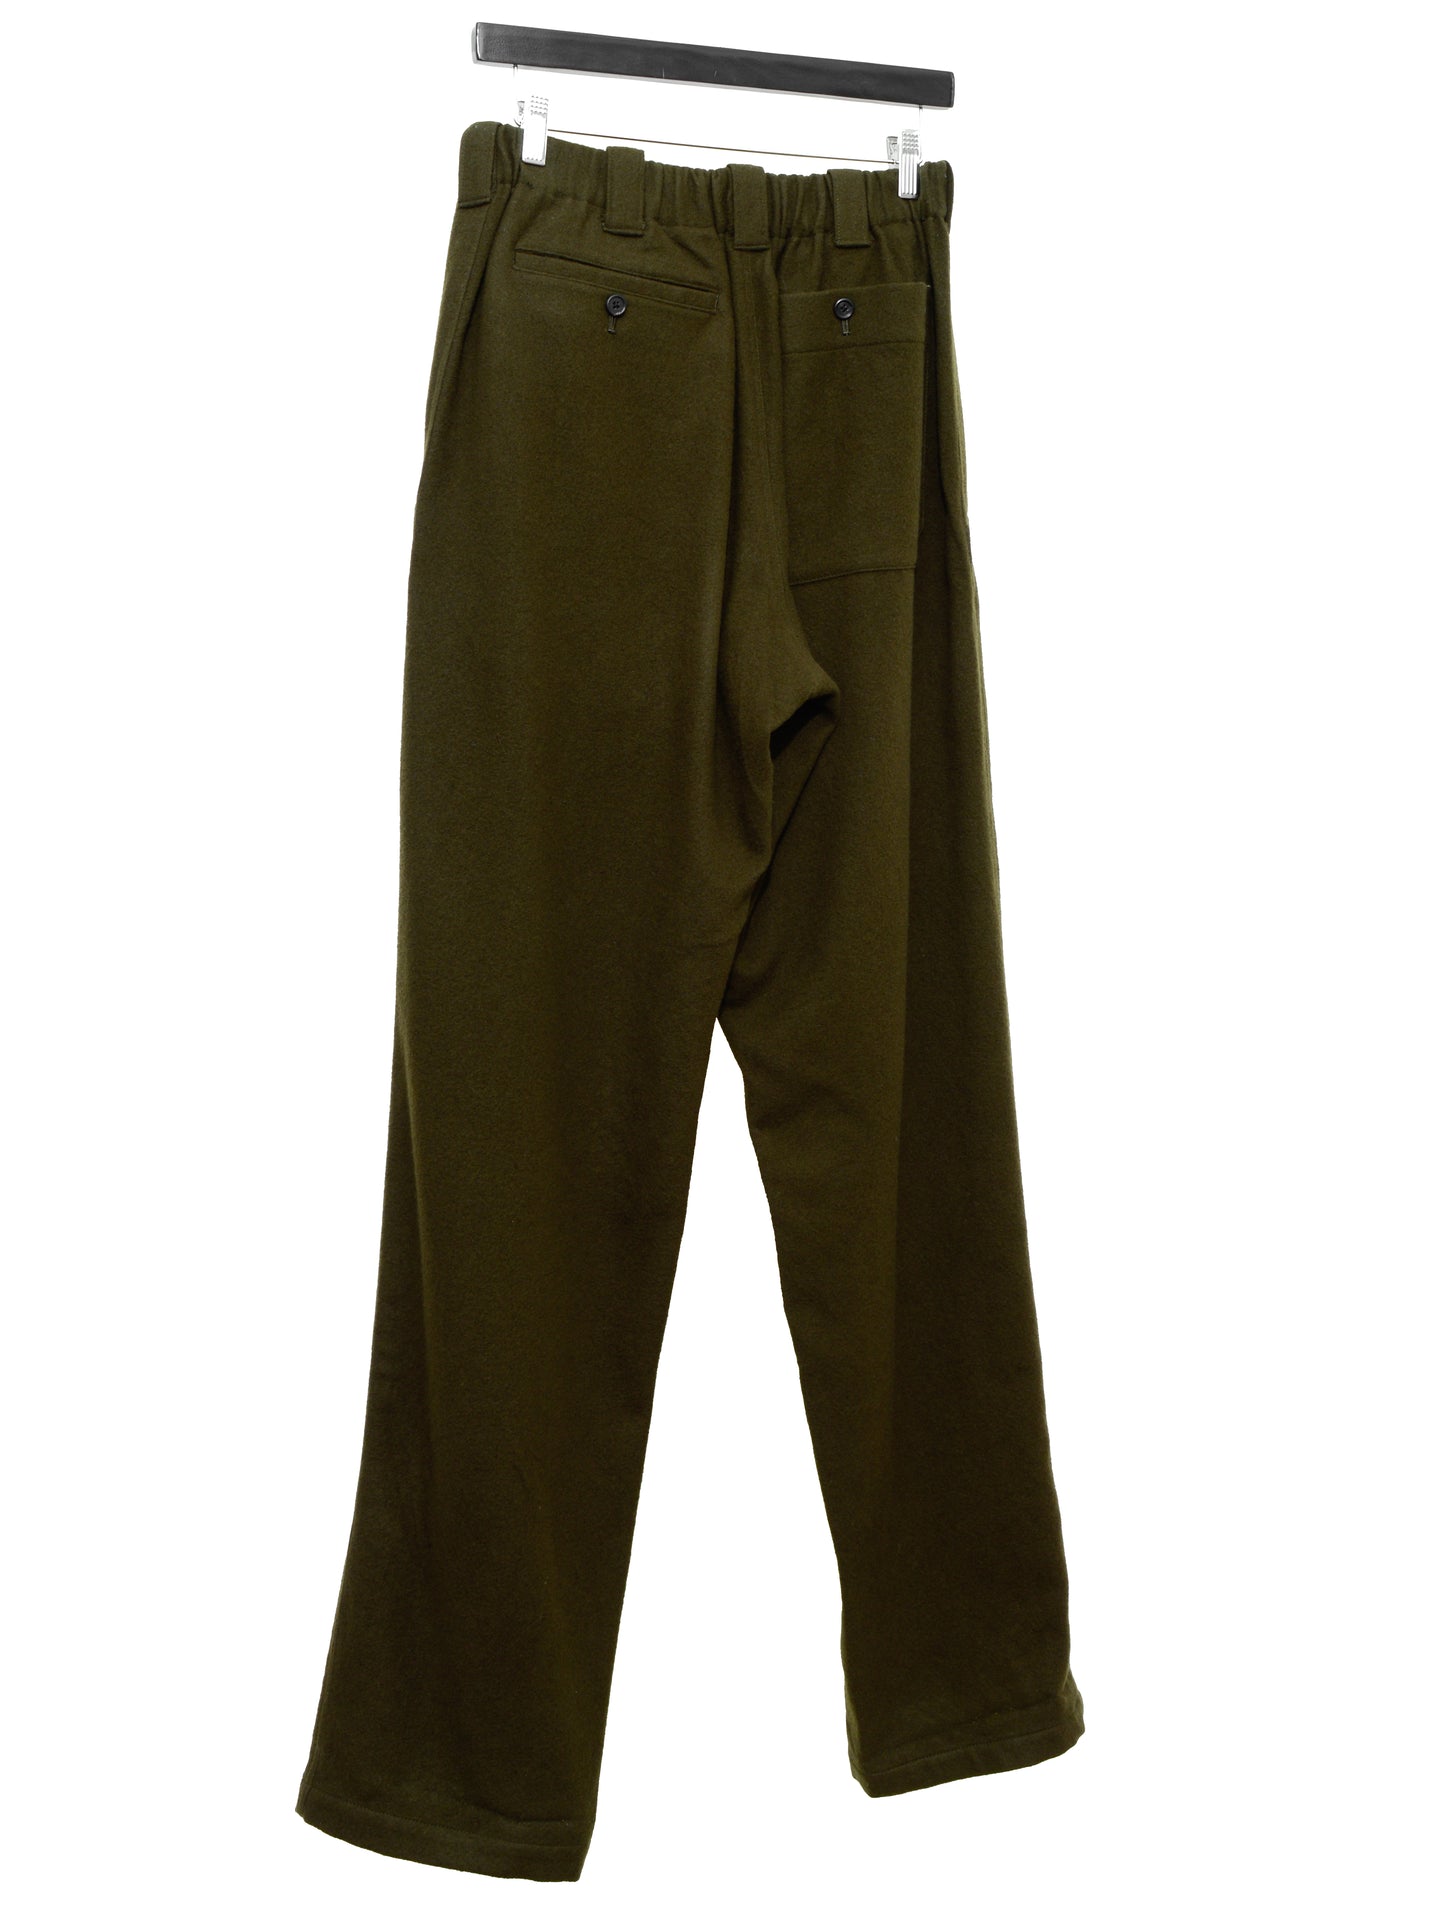 elastic waist pants olive ∙ melton wool ∙ medium